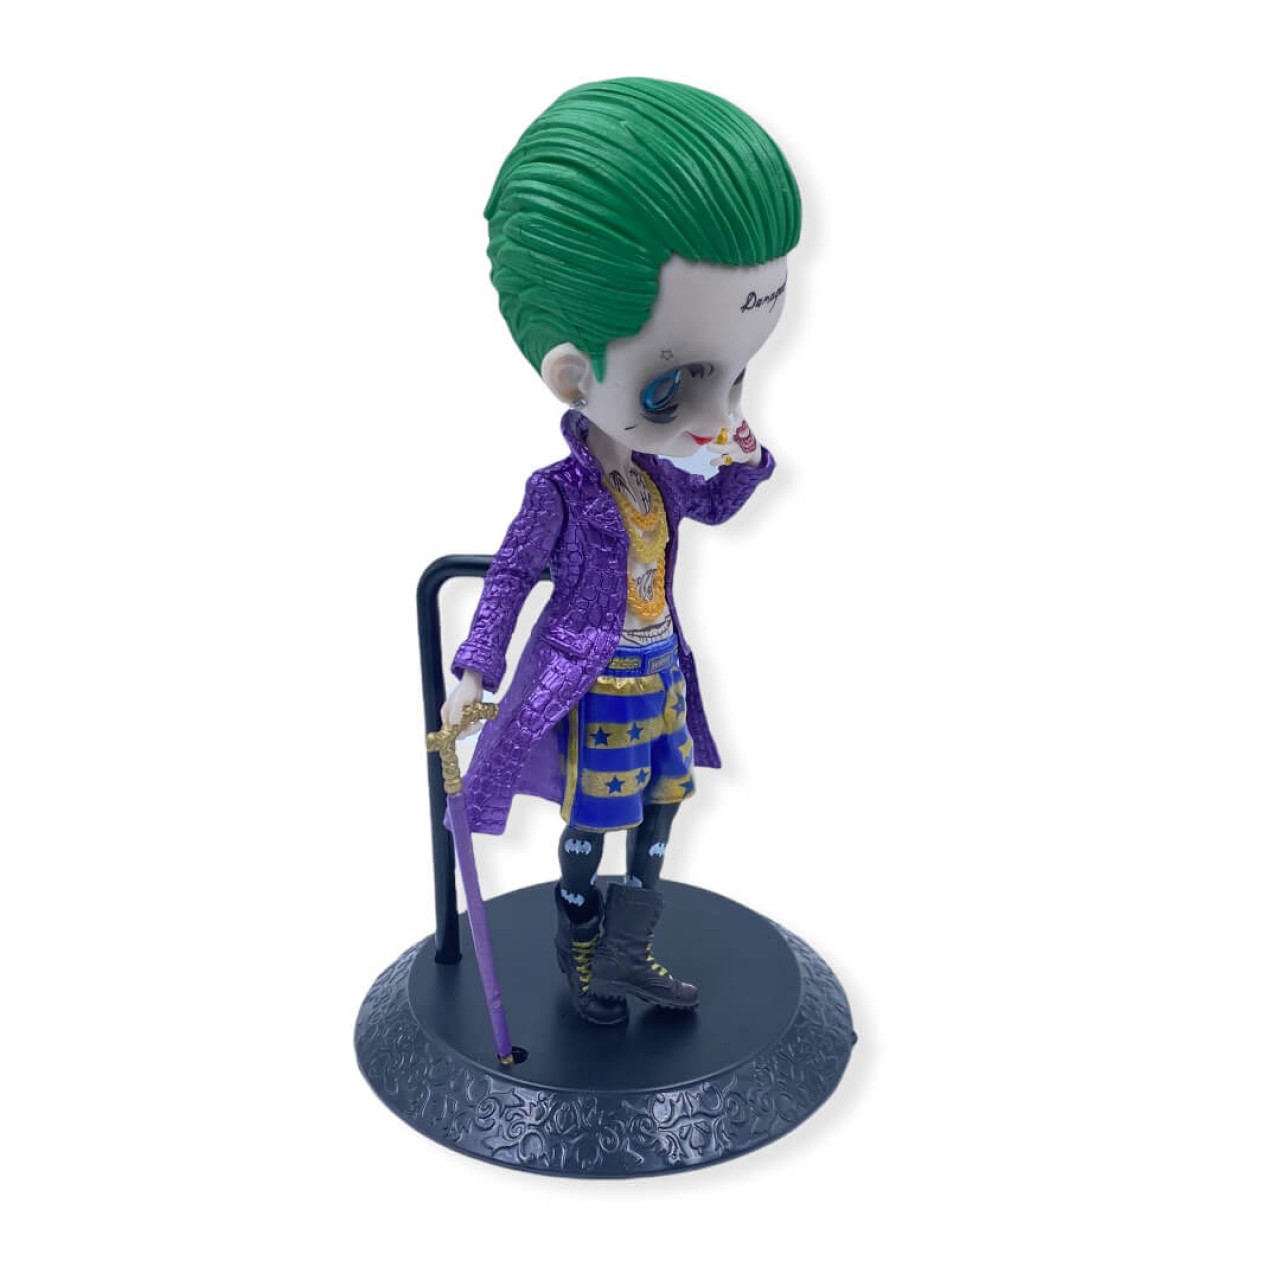 Suicide Squad Joker Decorative Action Figure